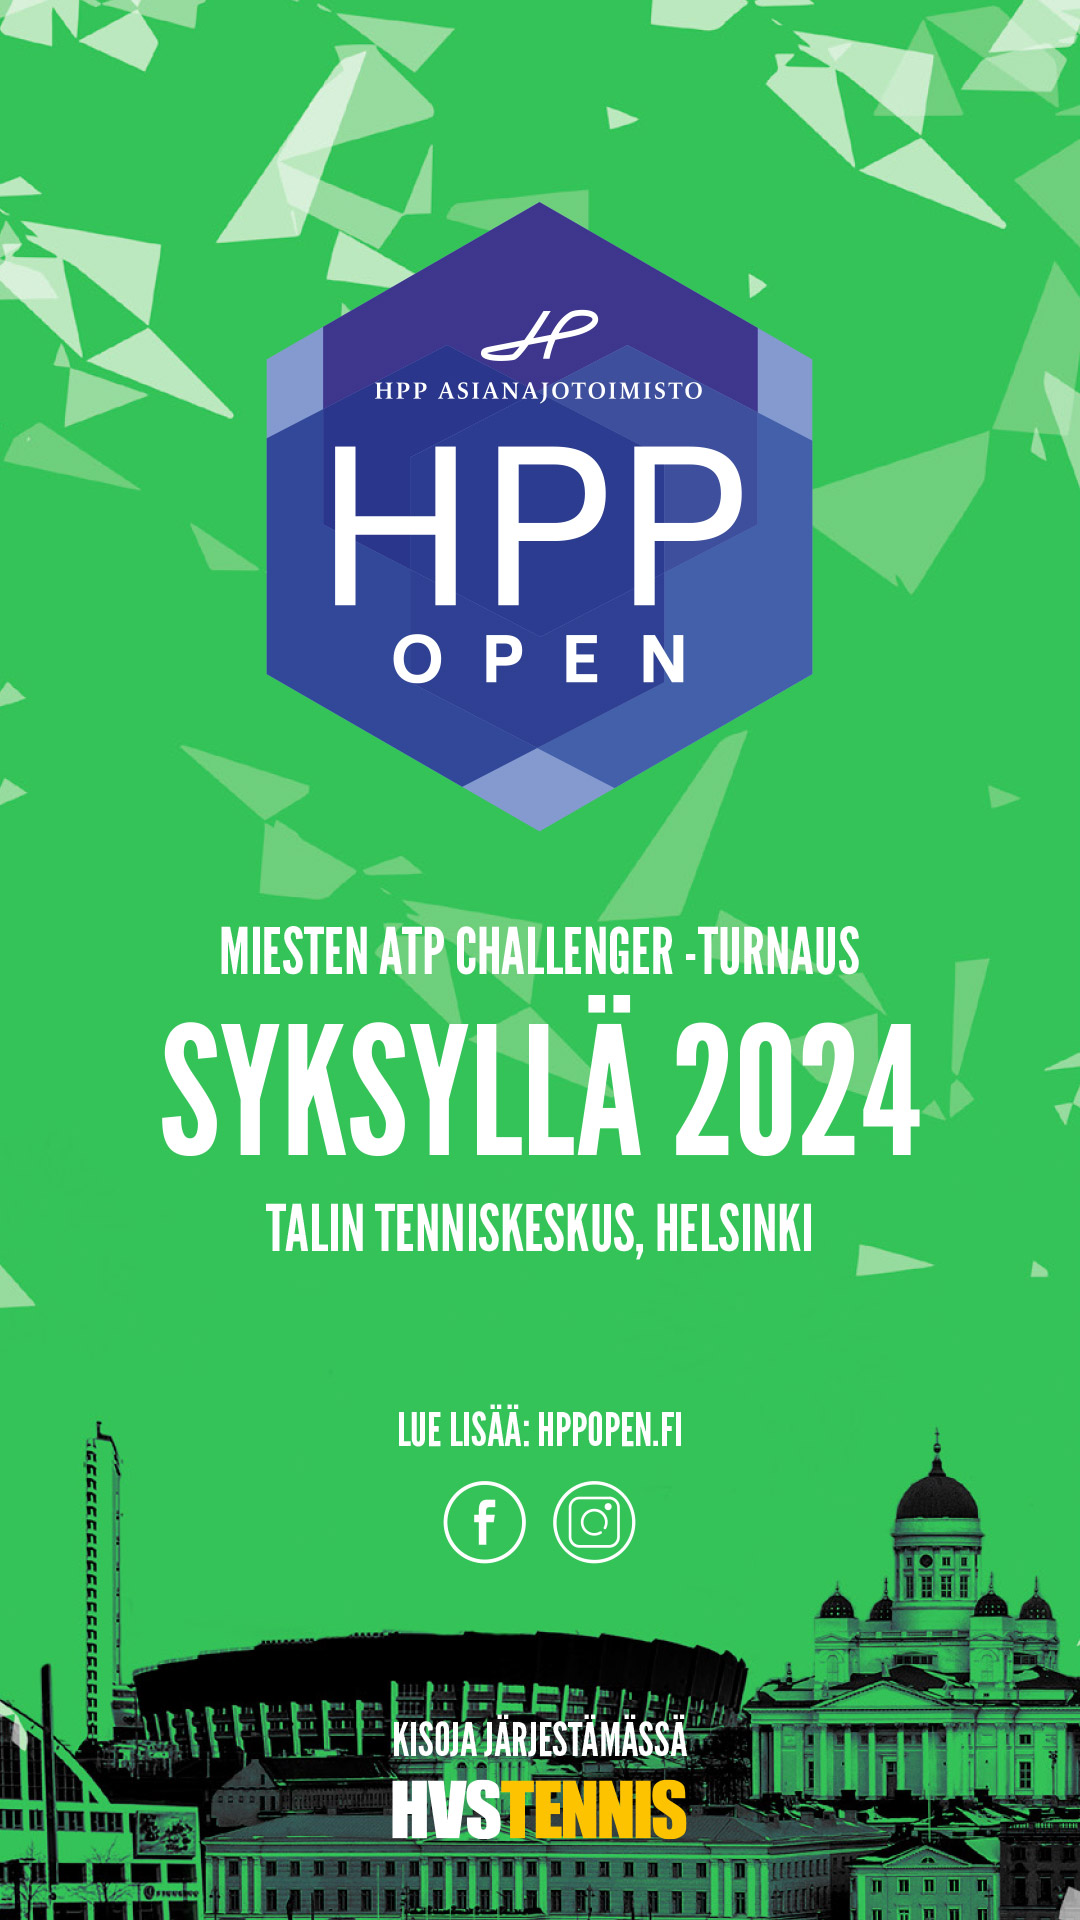 HPP Open ATP Challenger tulossa syksyllä 2024.